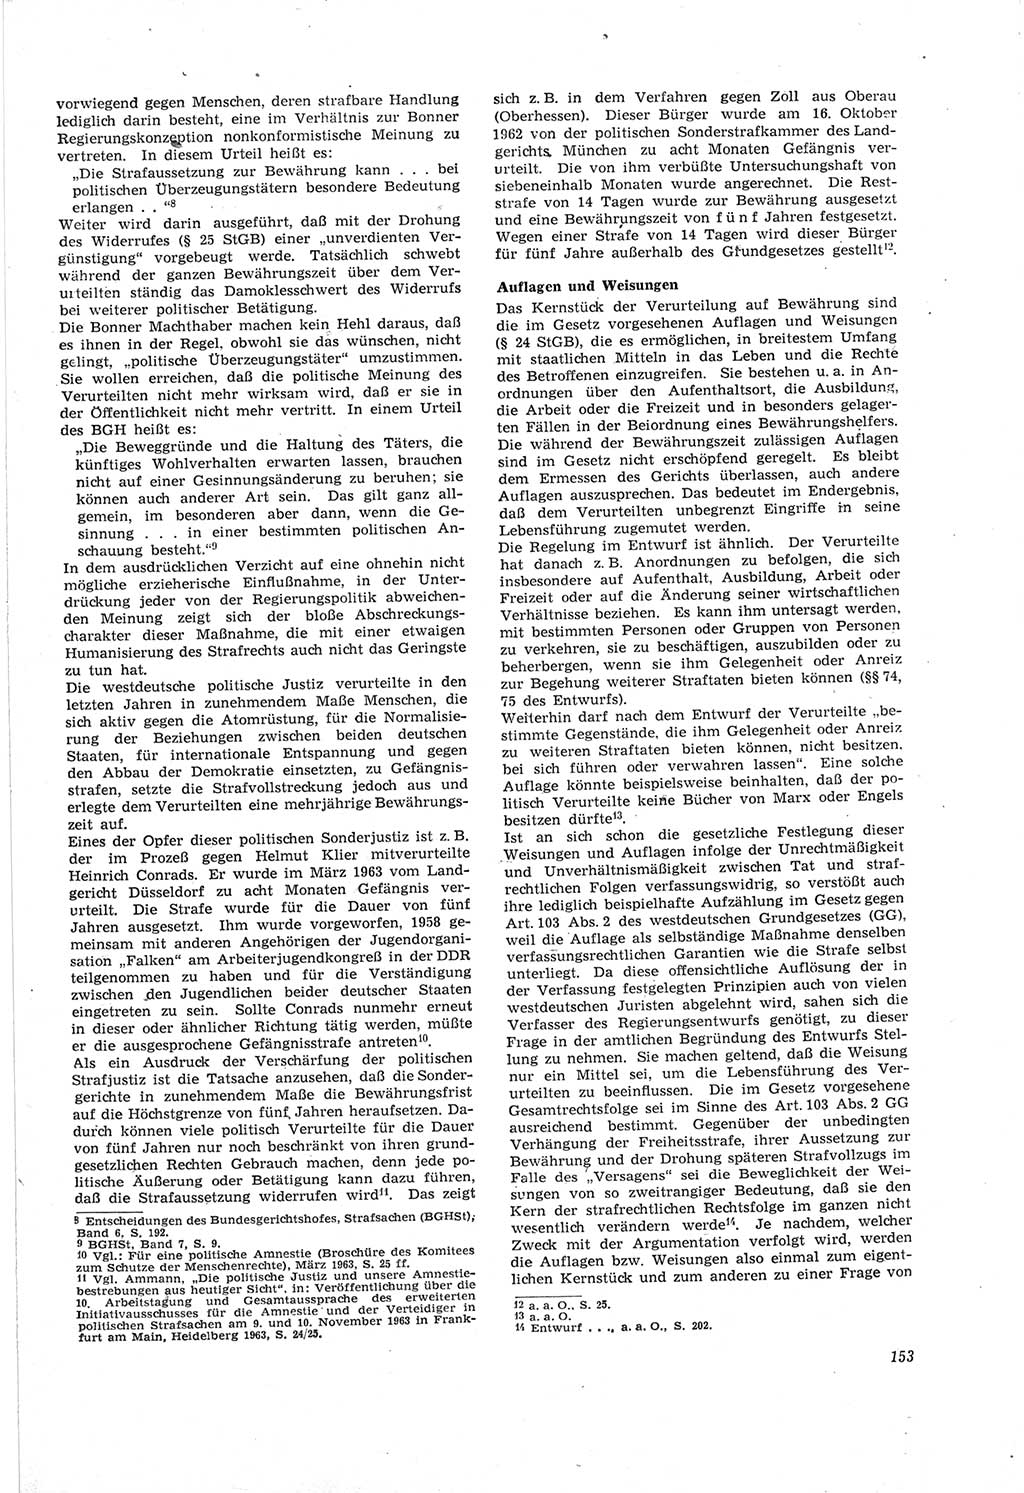 Neue Justiz (NJ), Zeitschrift für Recht und Rechtswissenschaft [Deutsche Demokratische Republik (DDR)], 18. Jahrgang 1964, Seite 153 (NJ DDR 1964, S. 153)